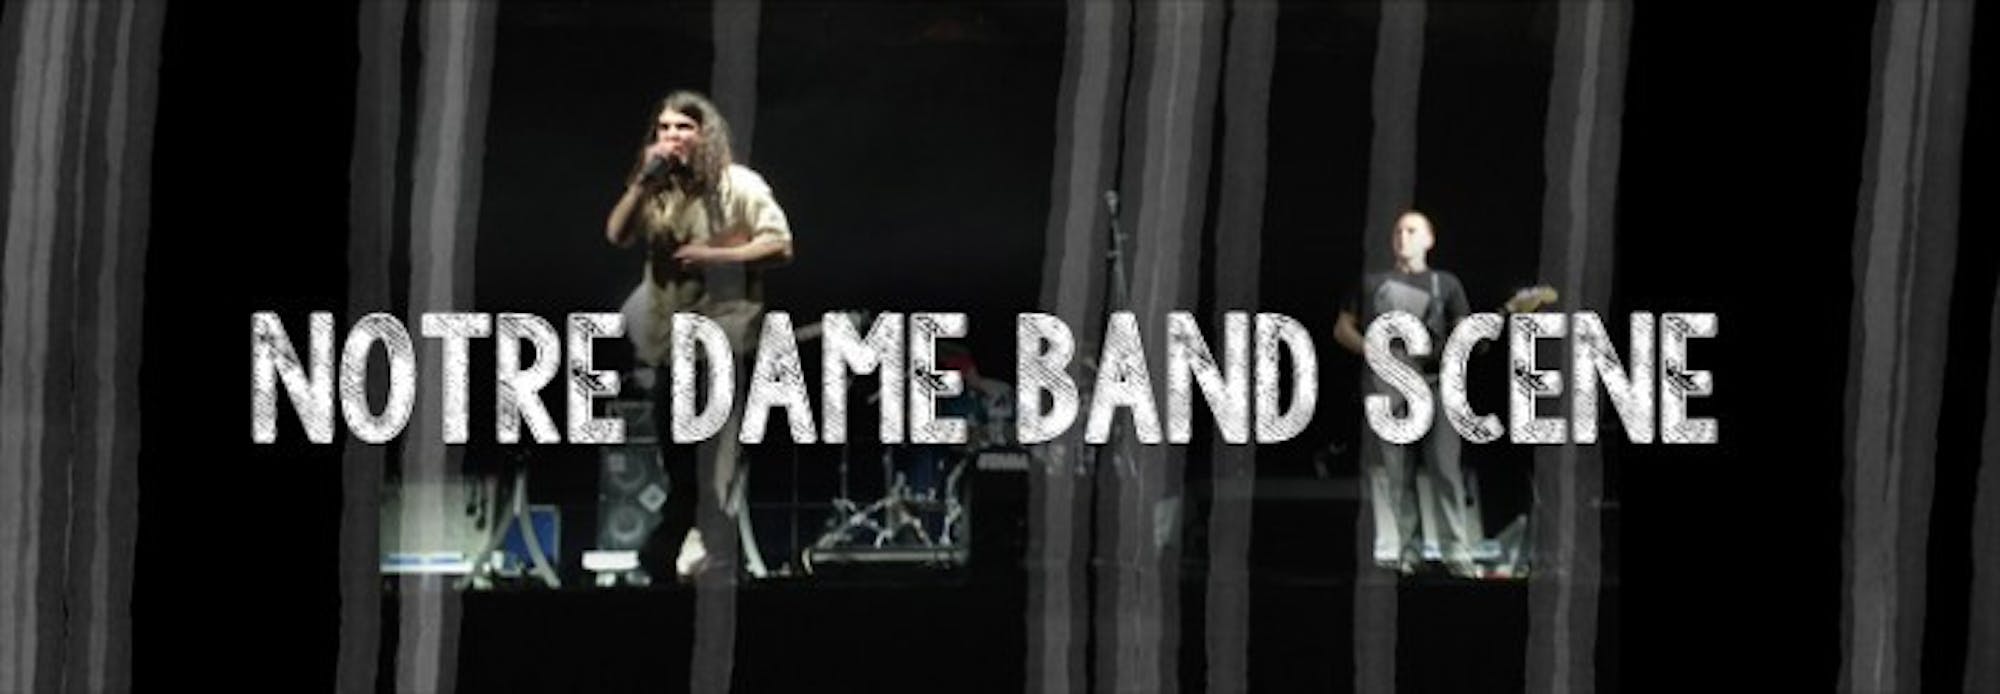 band_scene_header_WEB